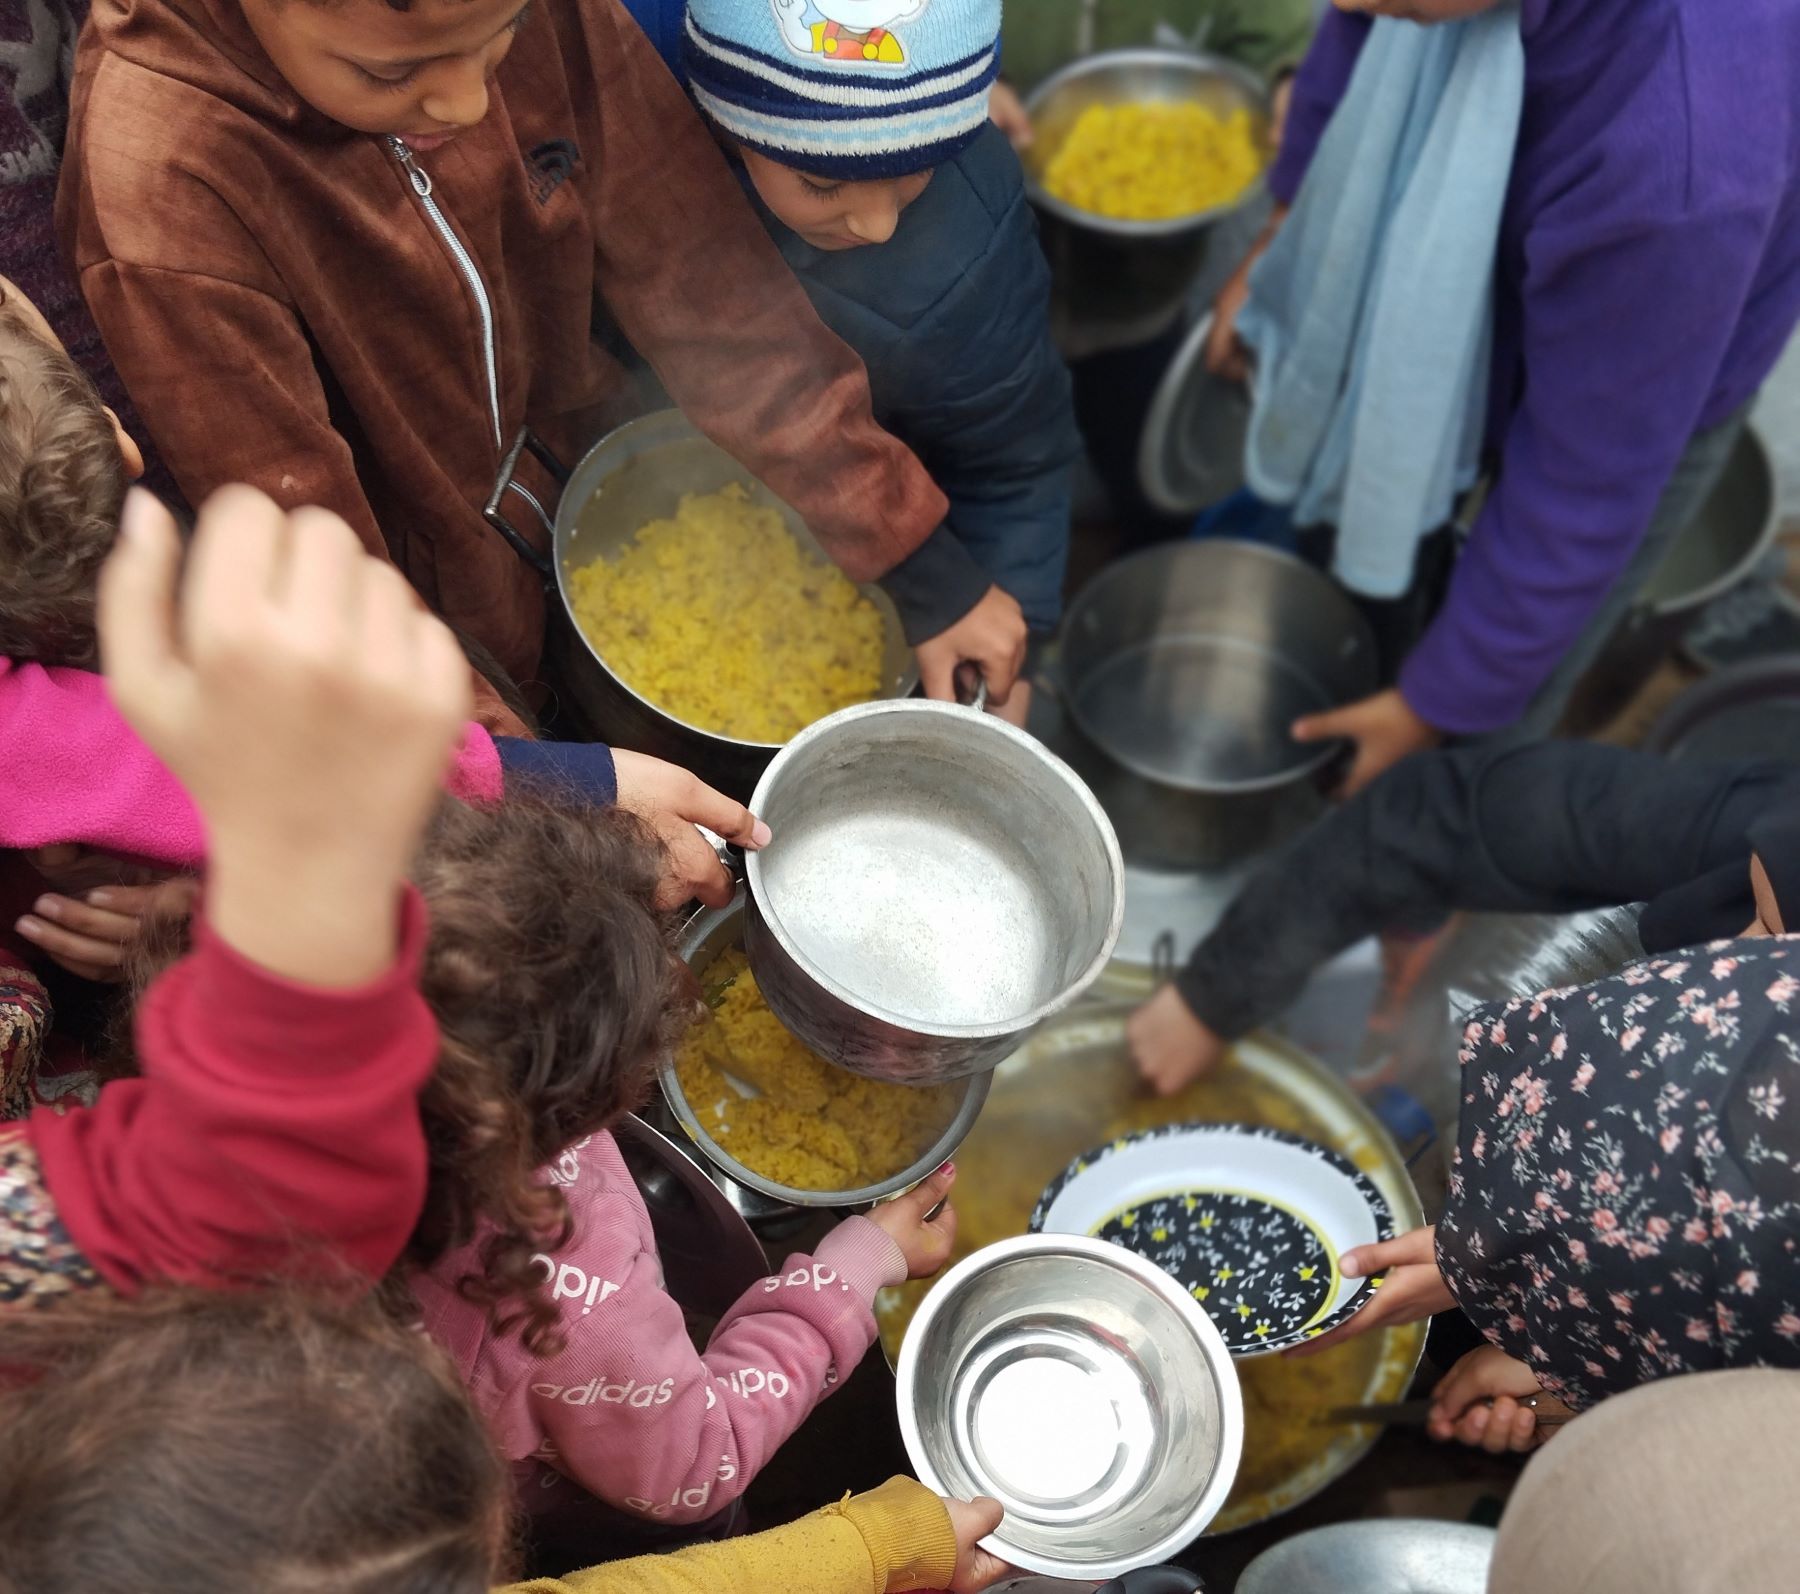 Crianças palestinas recebem comida em Gaza: risco da fome e a crise humanitária generalizada (Foto: ActionAid Palestina)